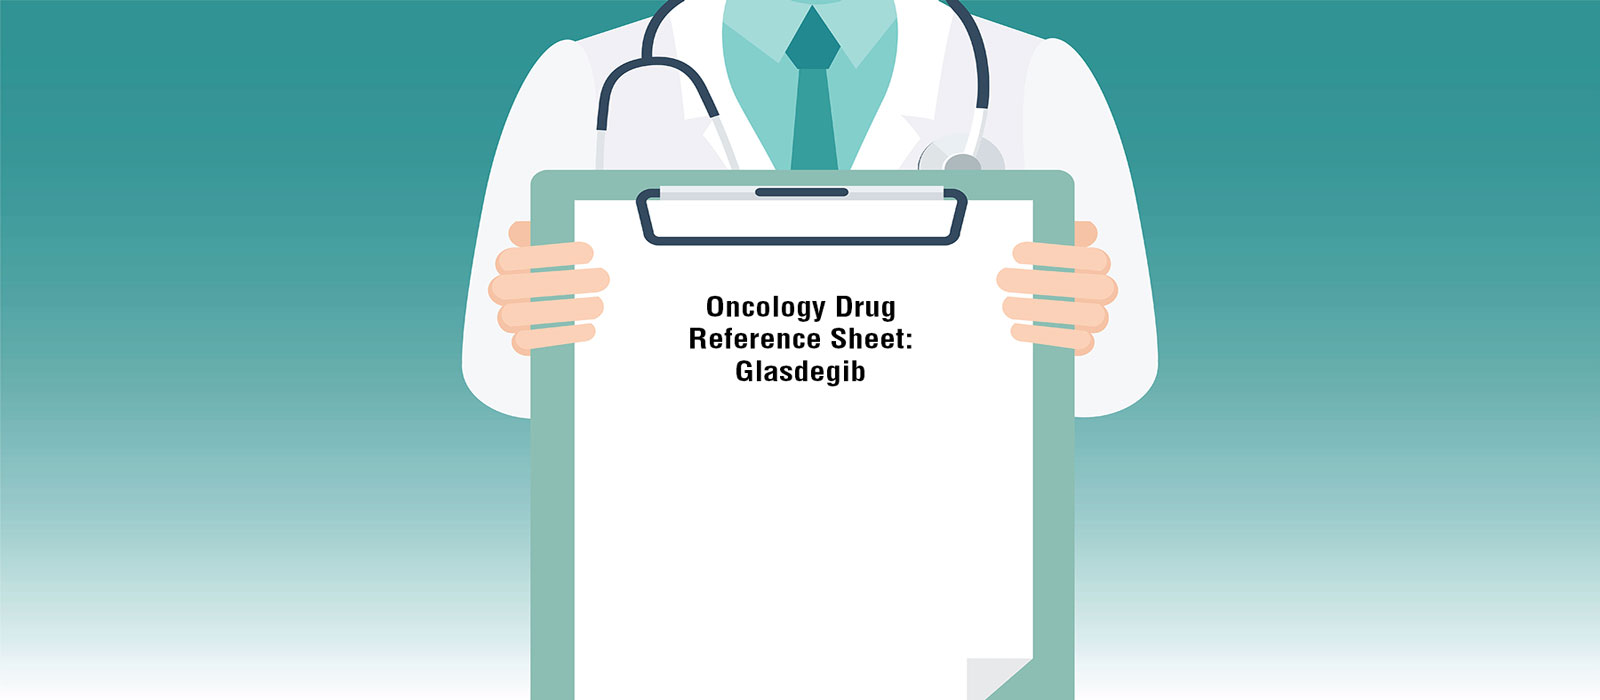 Oncology Drug Reference Sheet: Glasdegib